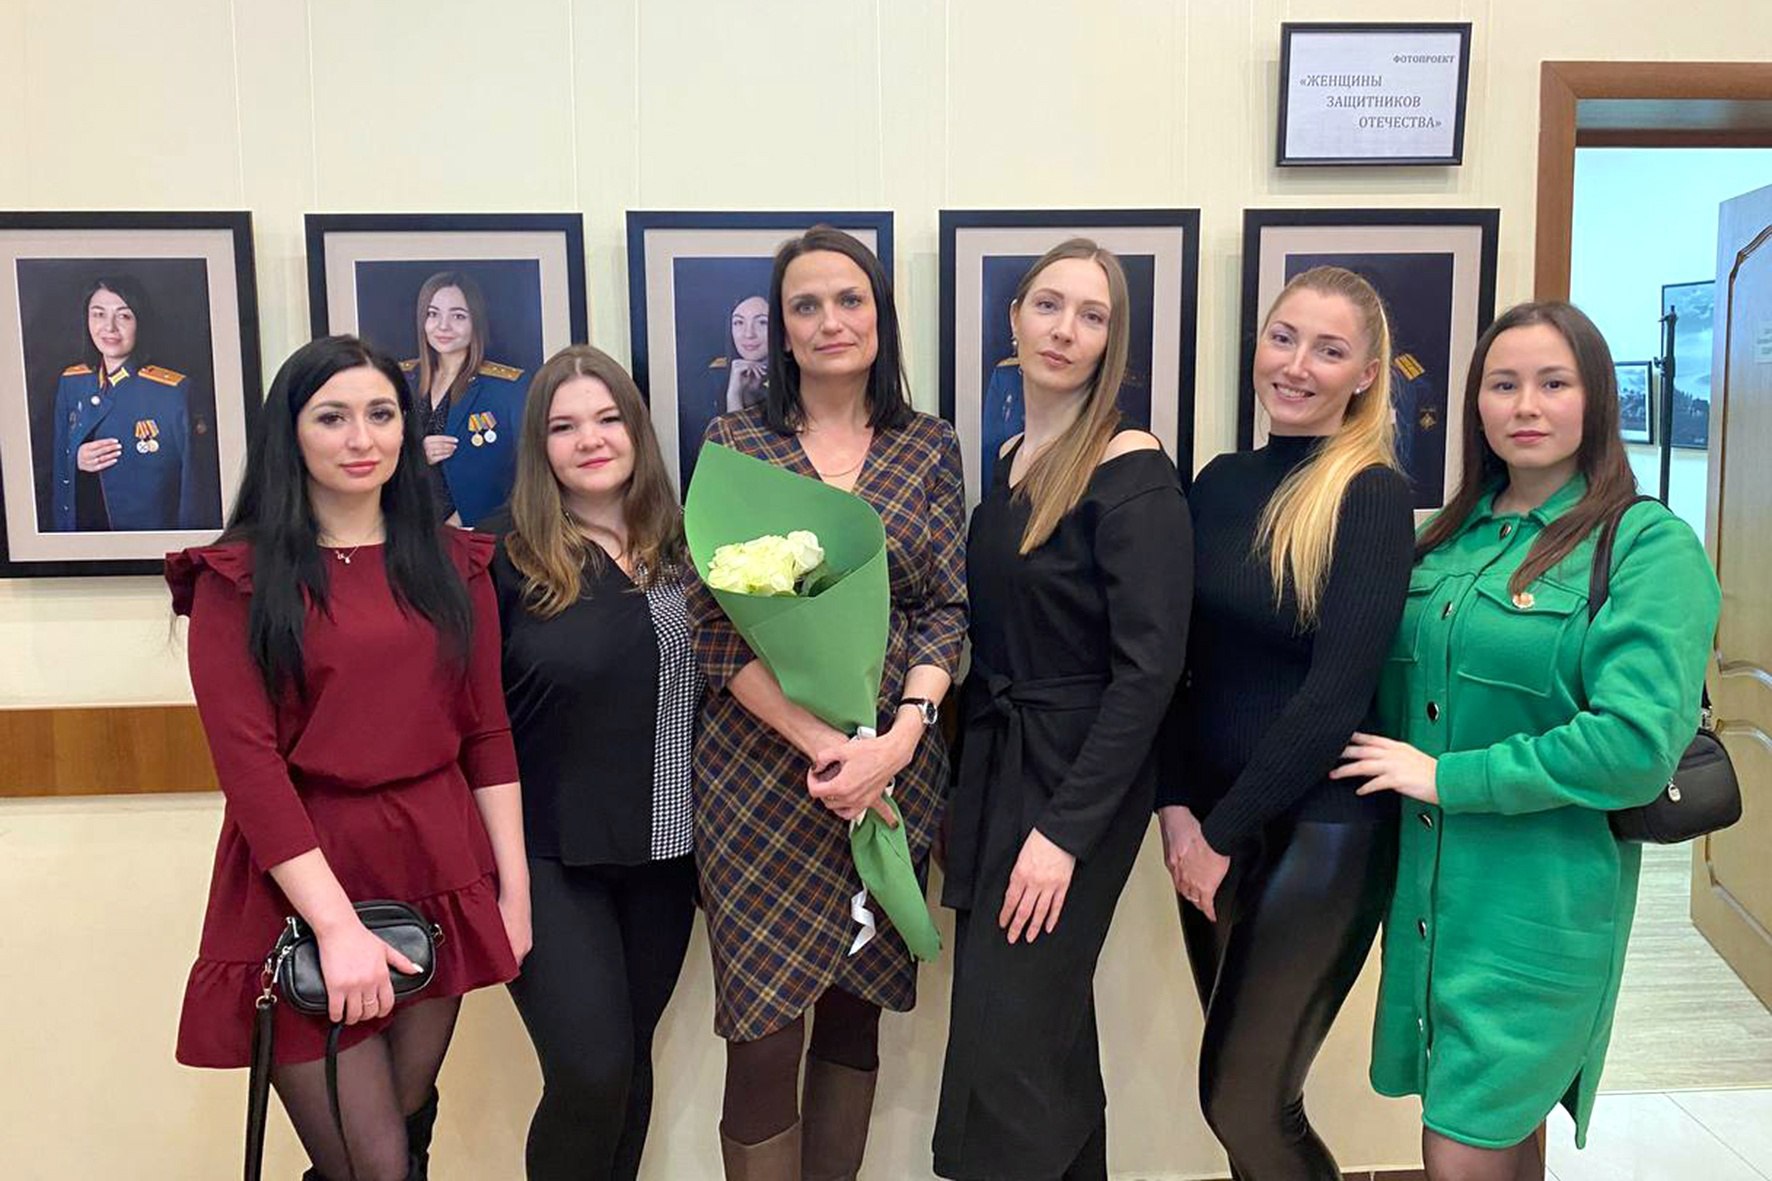 В галерее им. В.А. Собровина открылась выставка Надежды Мельниченко «Женщины защитников Отечества»